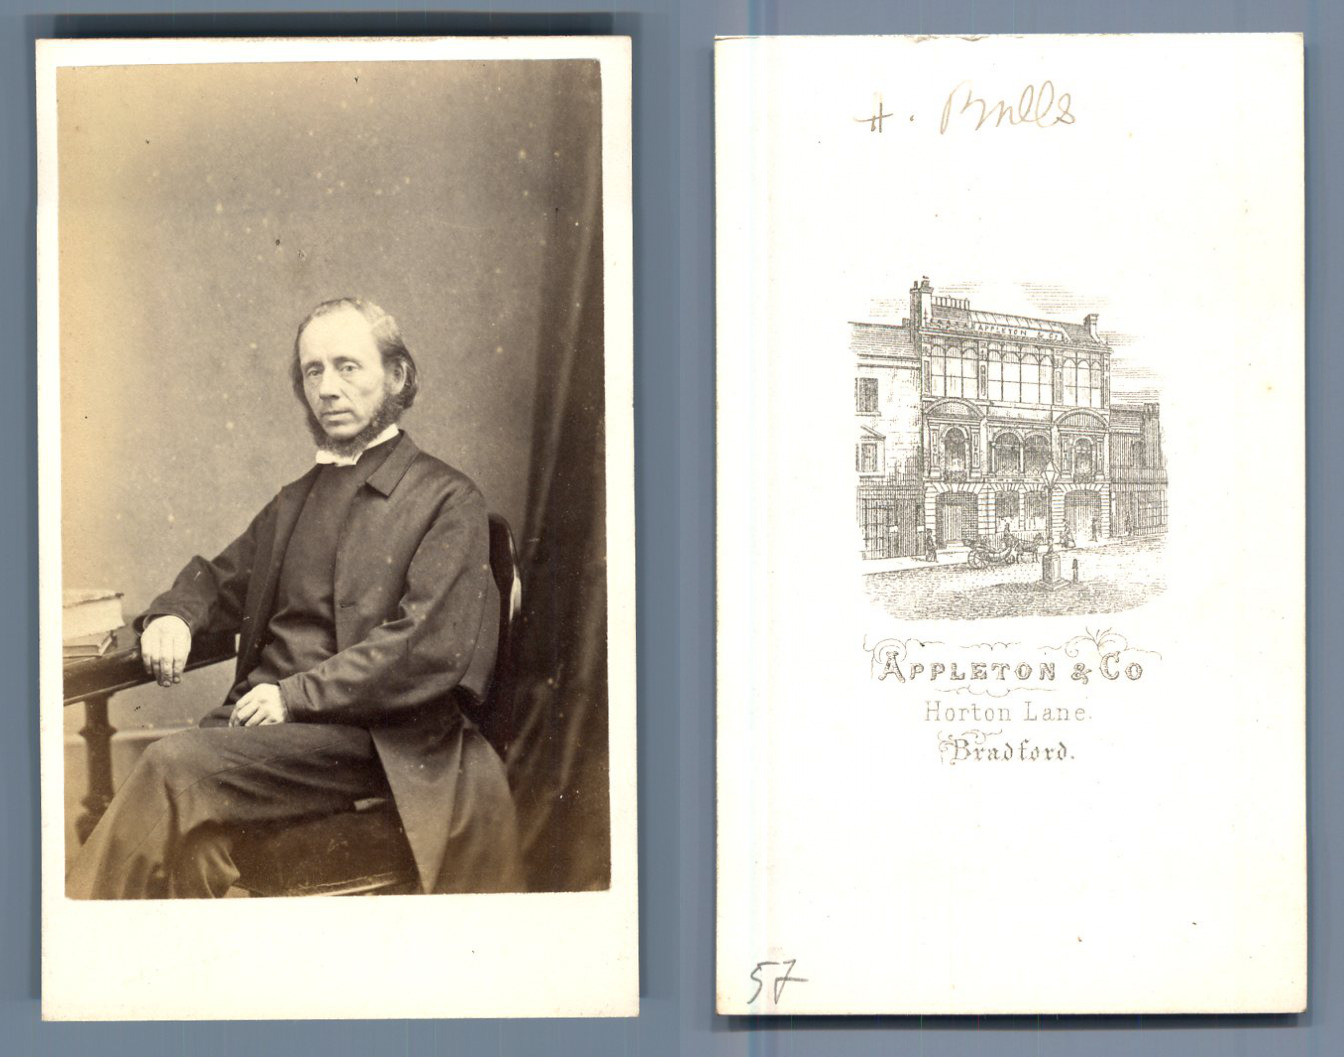 Reverend Henry Balls, Methodist Church CDV, Appleton & Co., Bradford. Card of 